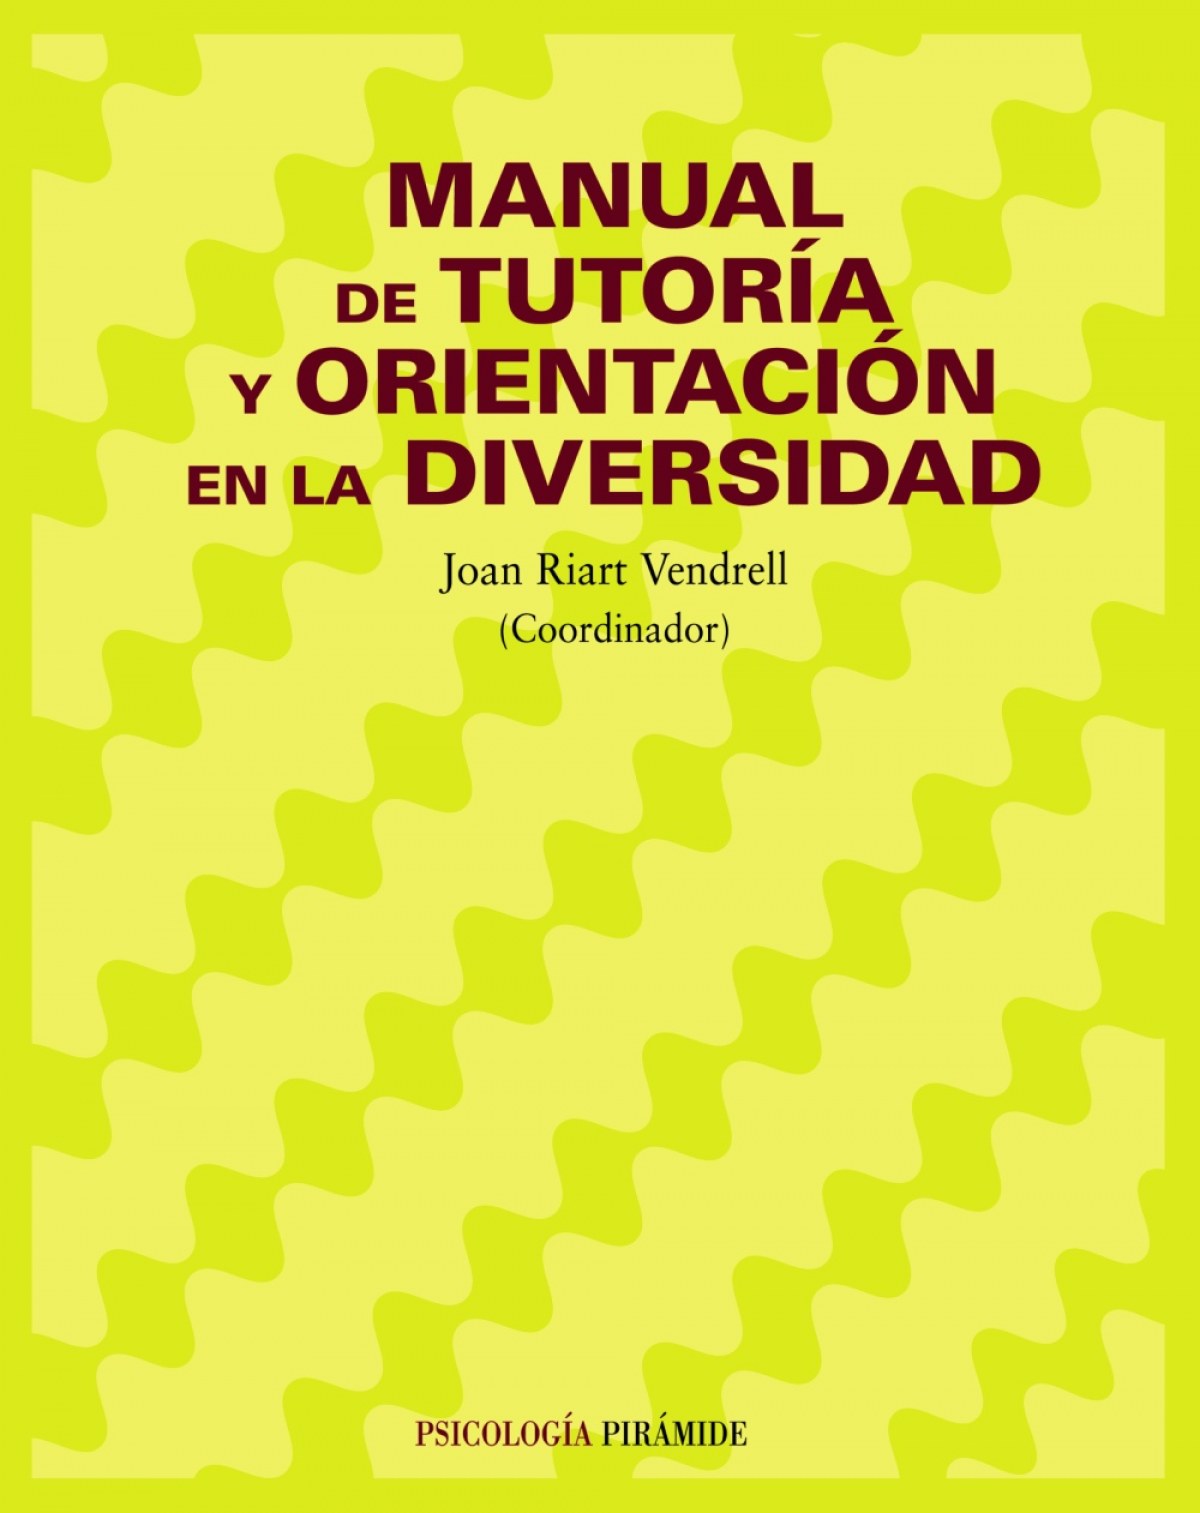 Manual de tutoria y orientacion en diversidad.(psicologia) - Riart Vendrell, Joan